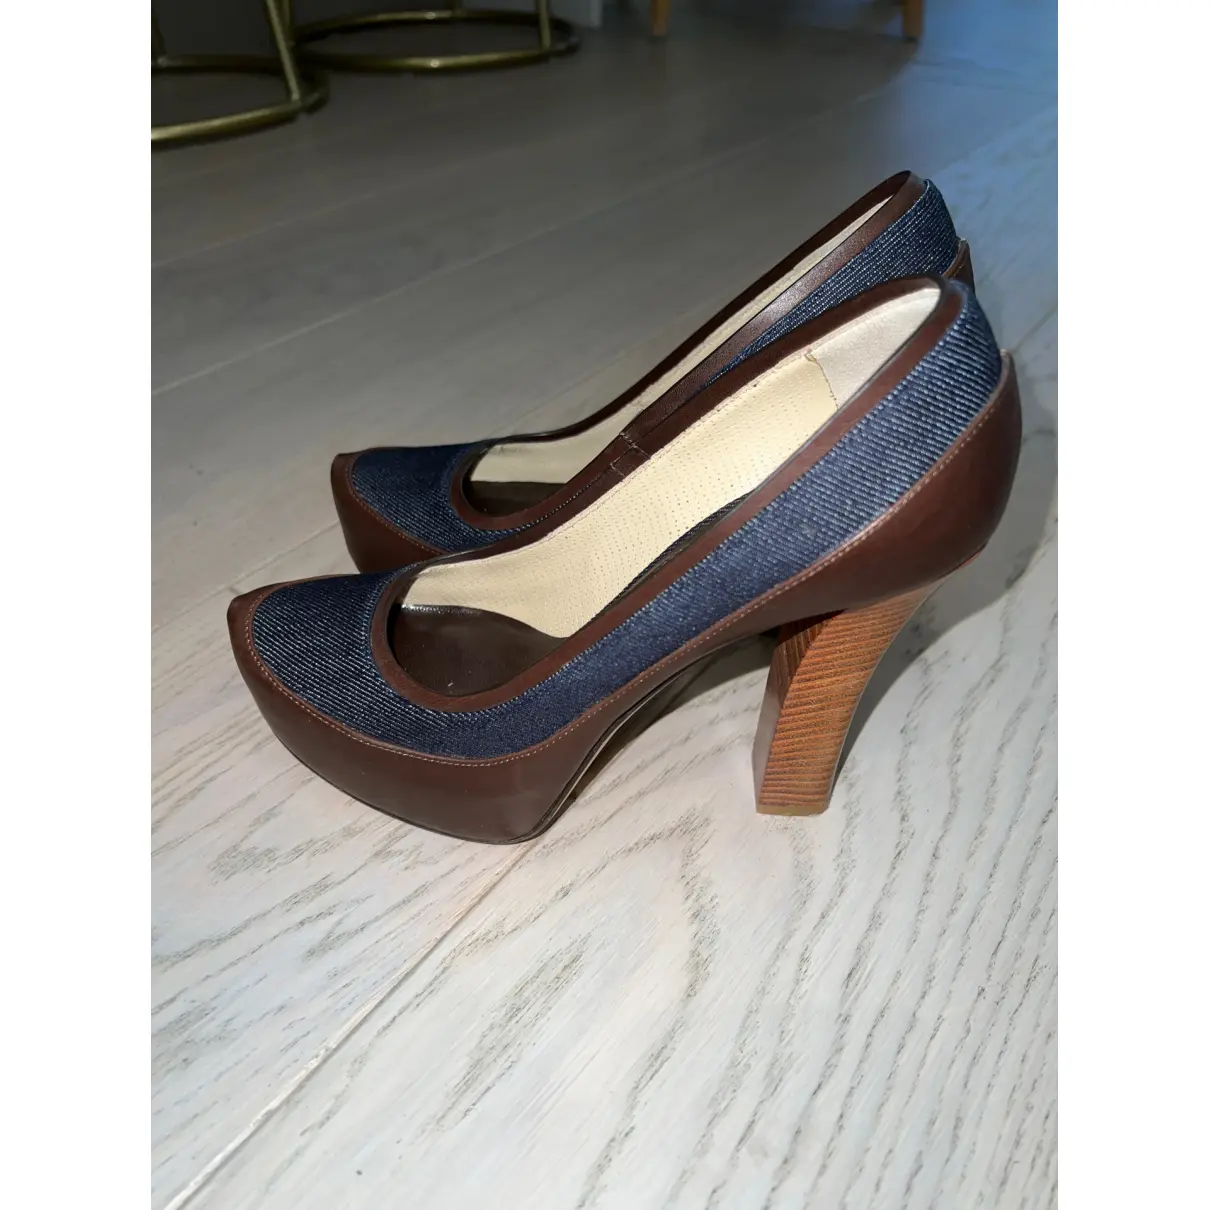 Buy Gianmarco Lorenzi Cloth heels online